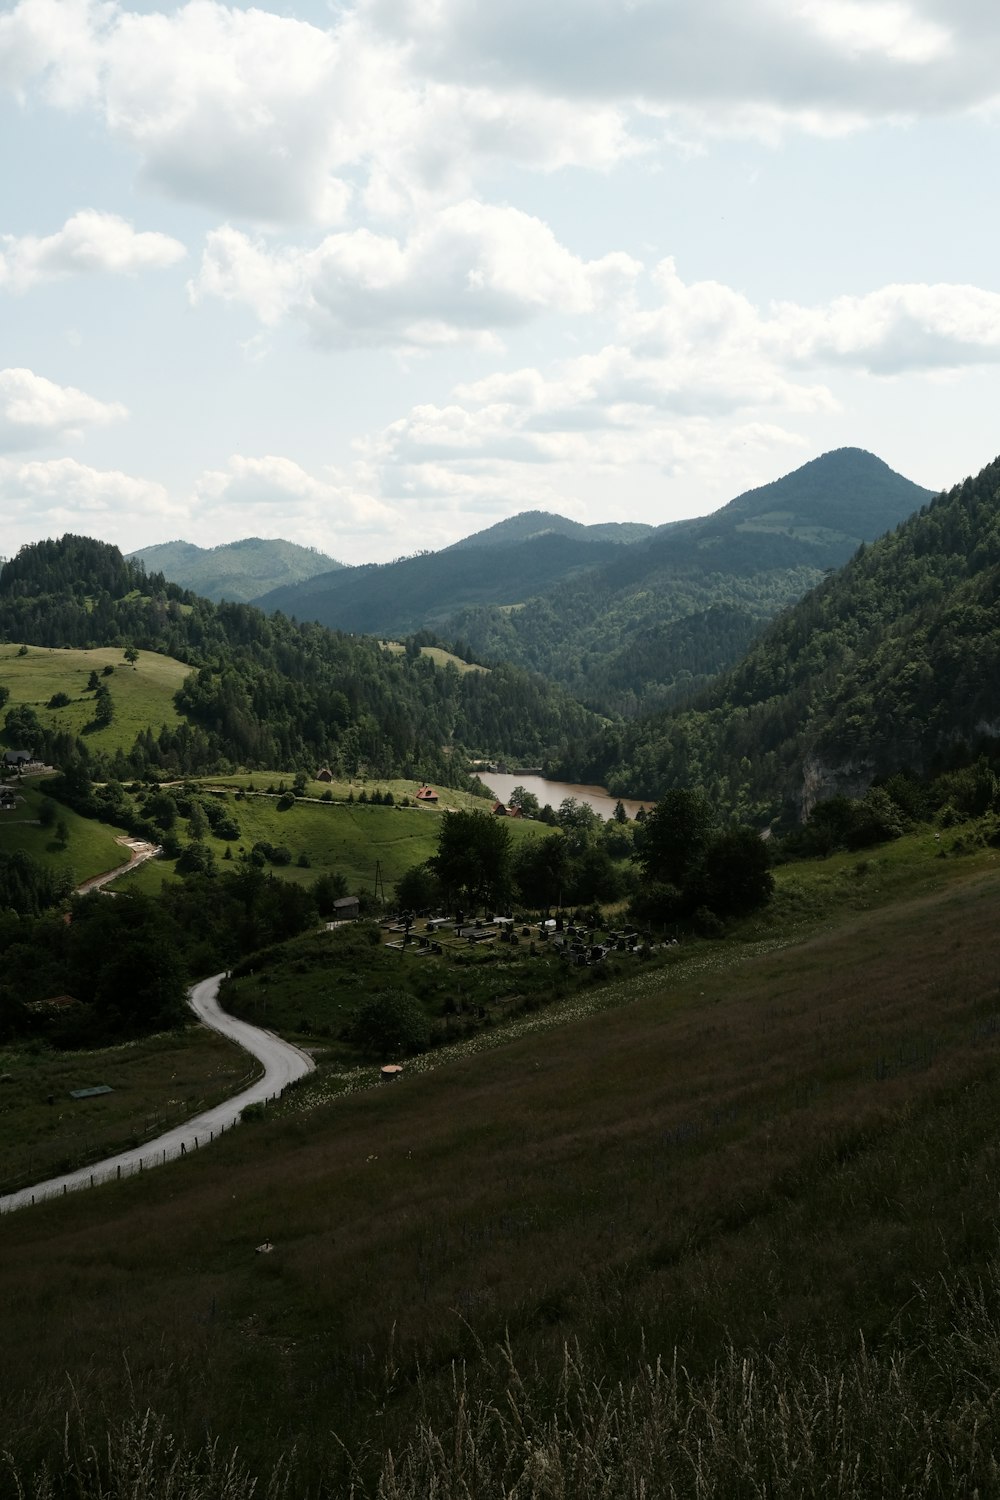 Una vista panorámica de un valle con un río que lo atraviesa